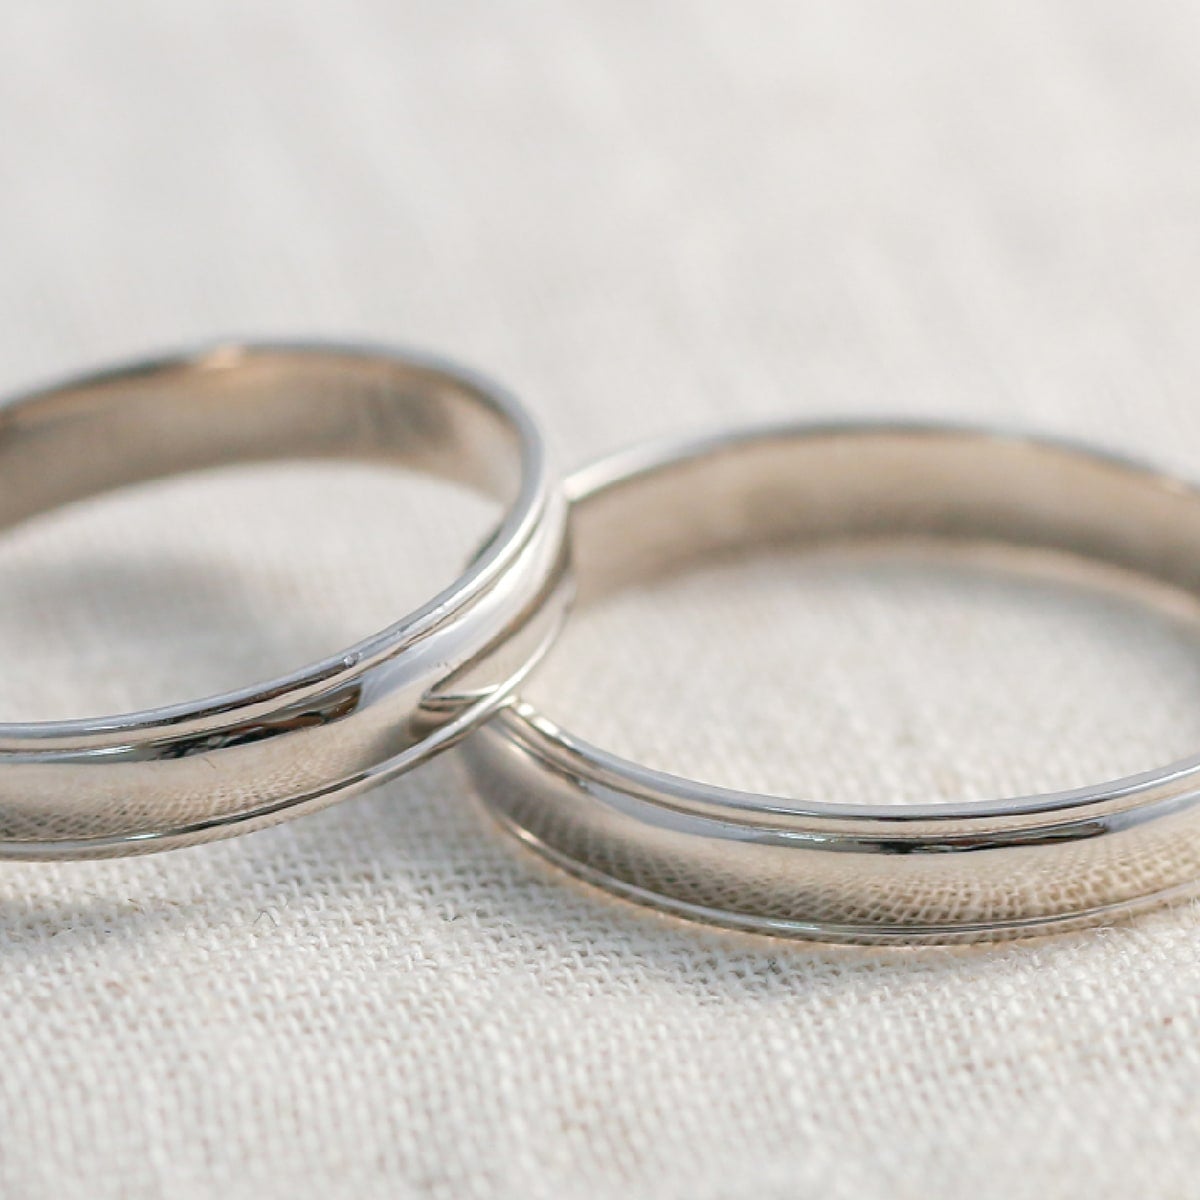 結婚指輪 2本セット | mr633l-mr633m